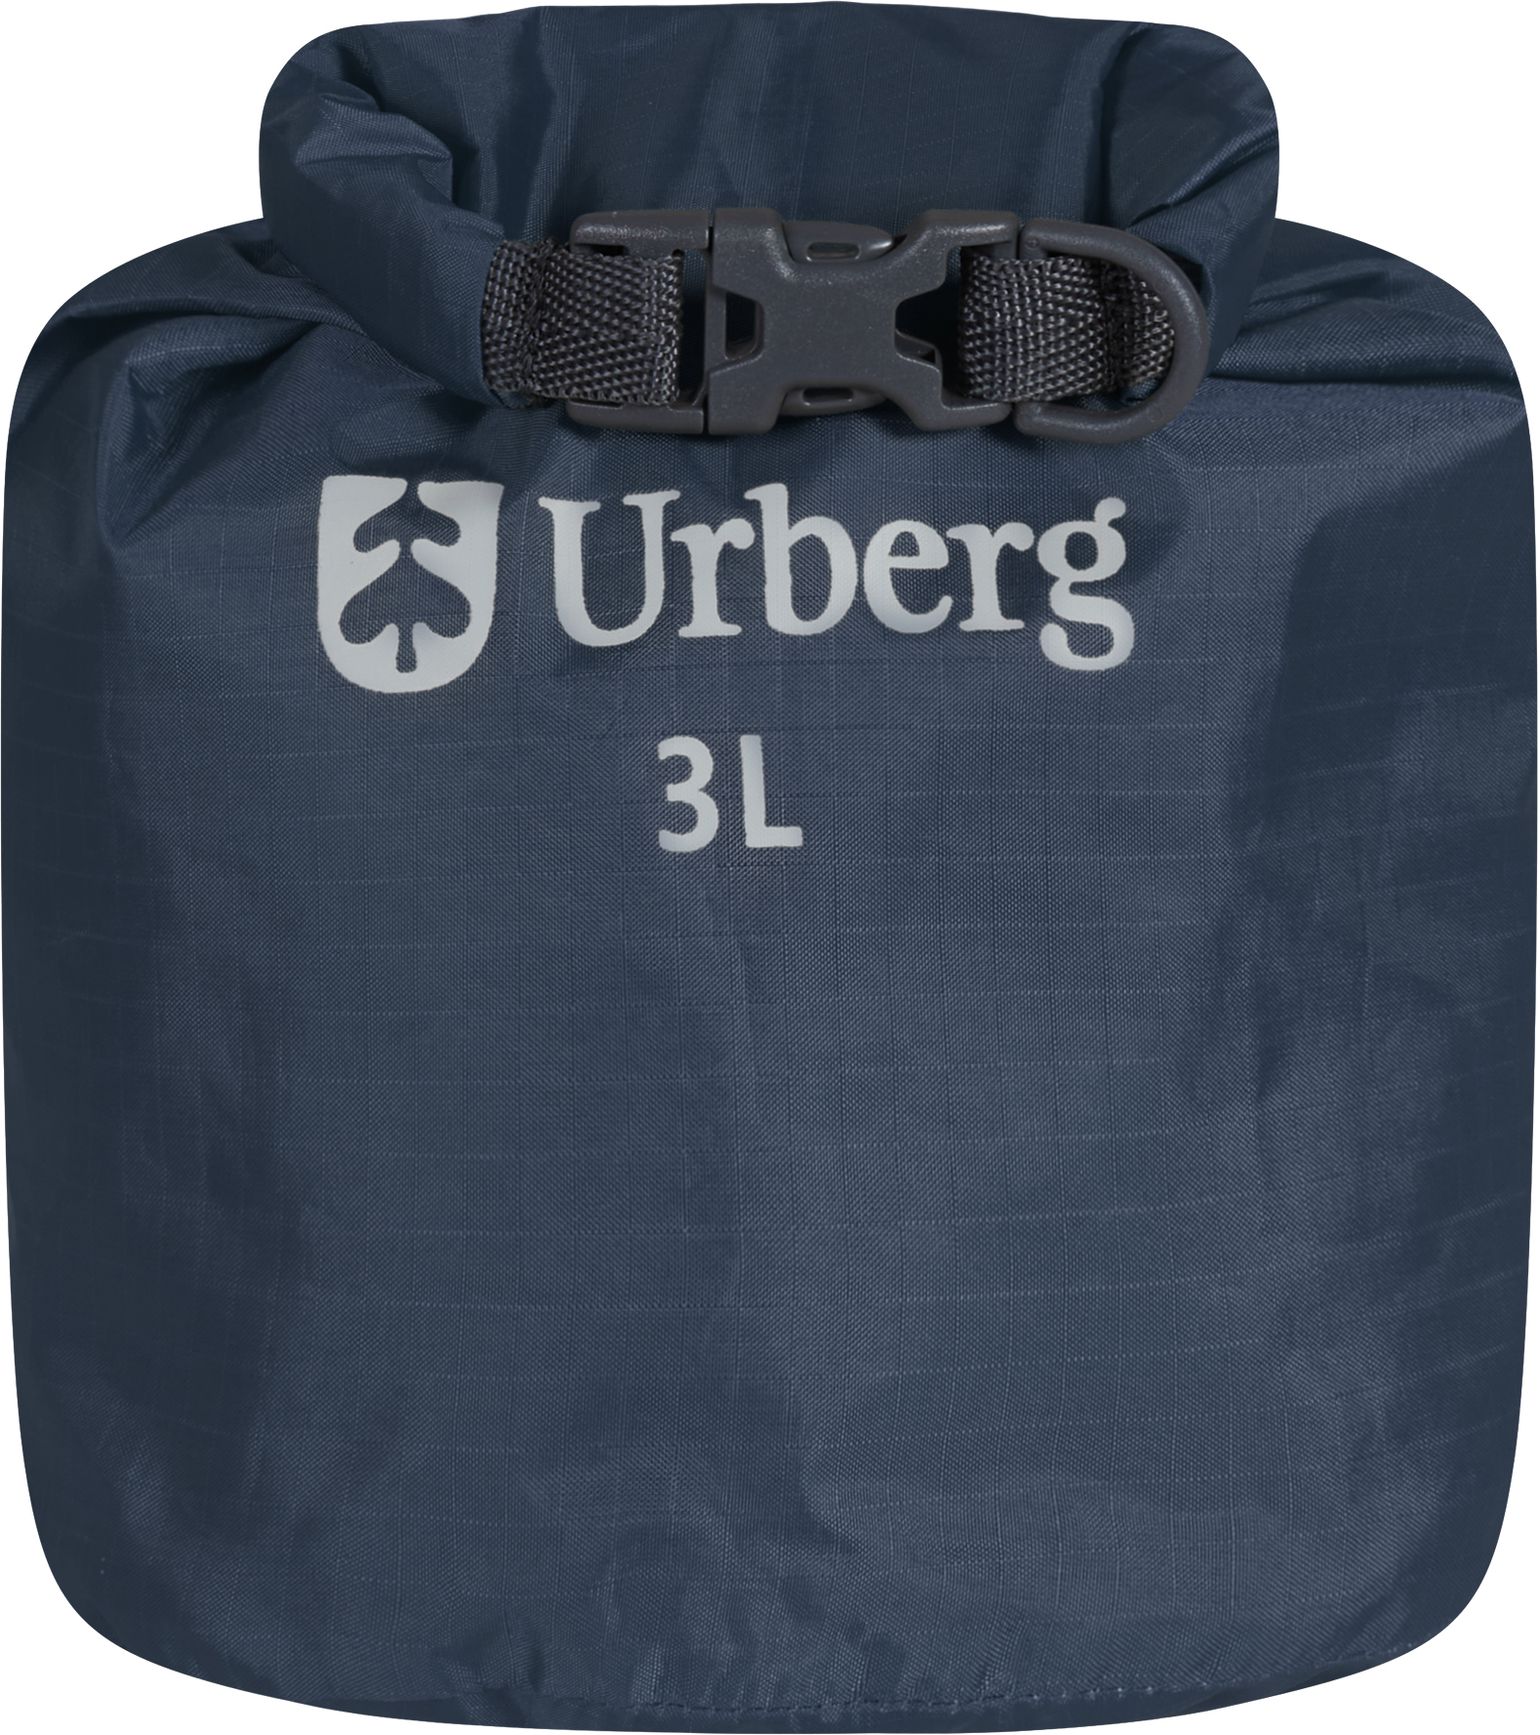 Urberg Dry Bag 3 L Midnight Navy